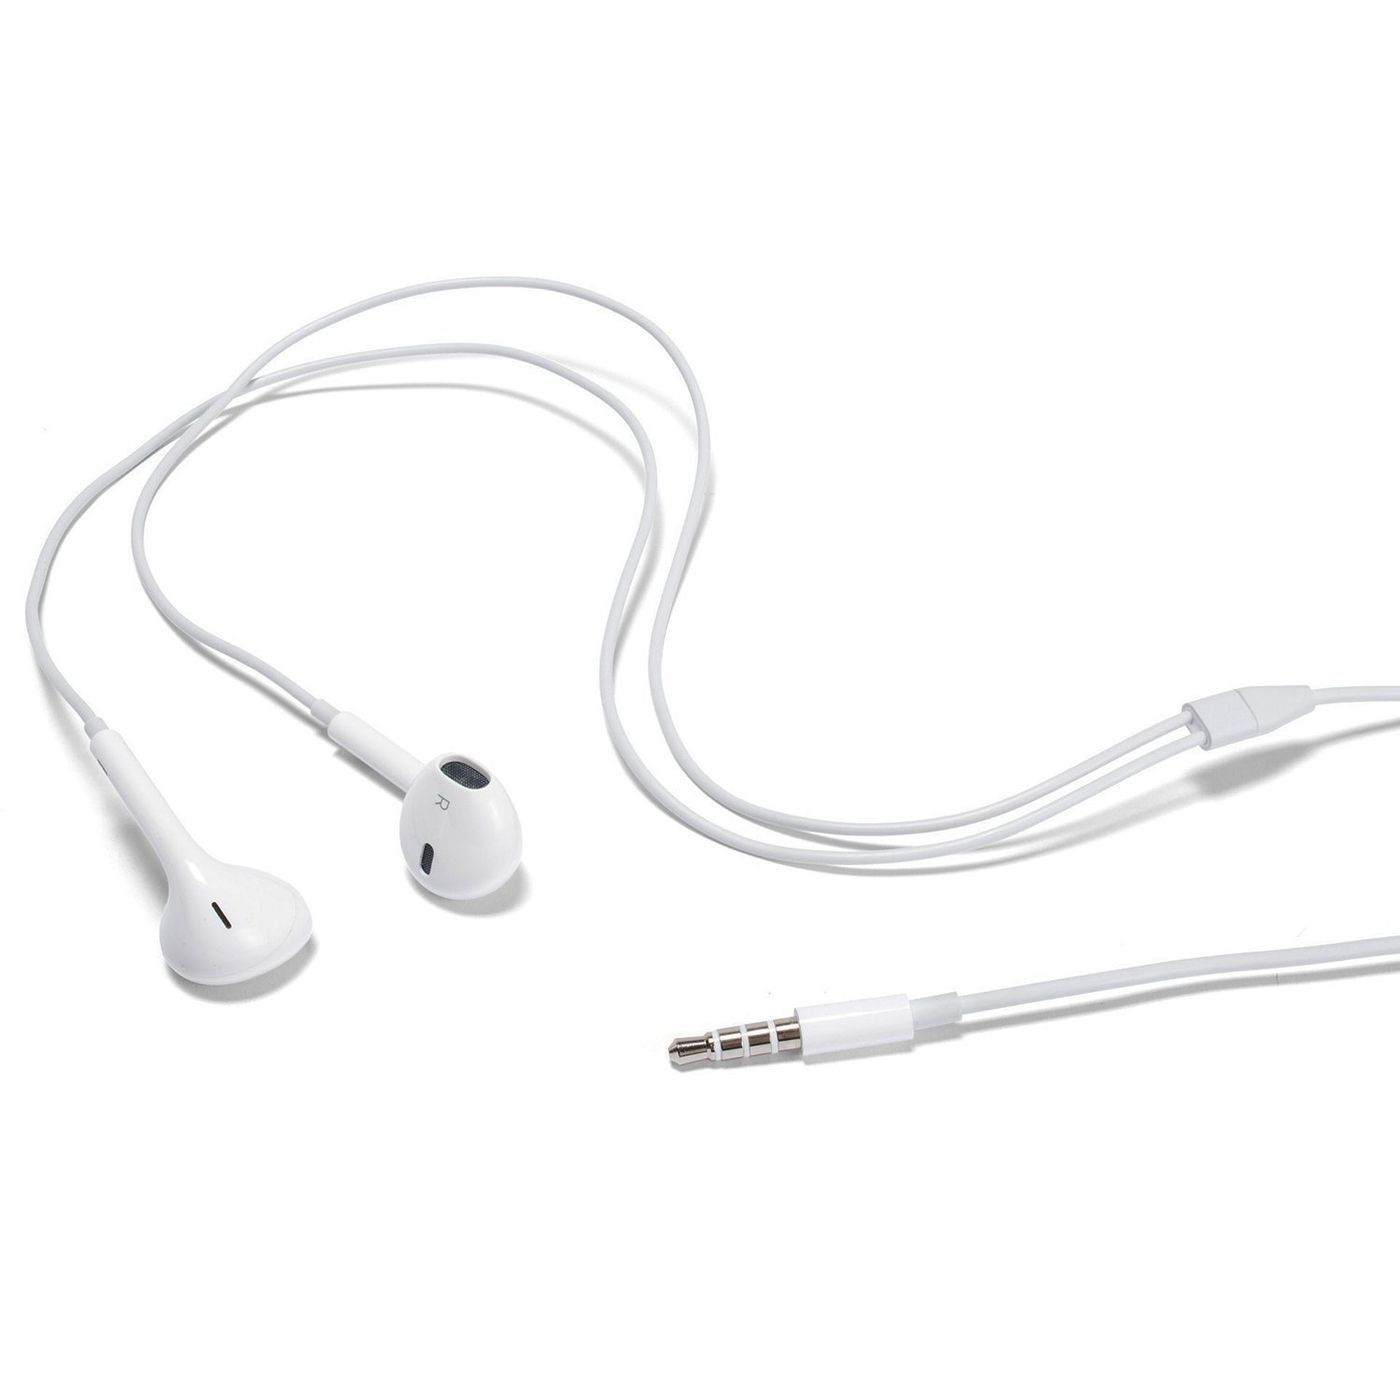 Наушники iphone 3.5. Наушники Apple Earpods 3.5. Наушники Apple Earpods with 3.5mm Headphone Plug. Проводная гарнитура Apple Earpods (3.5 mm) белый. Наушники с микрофоном Apple Earpods Headphone Plug (mnhf2zm/a).